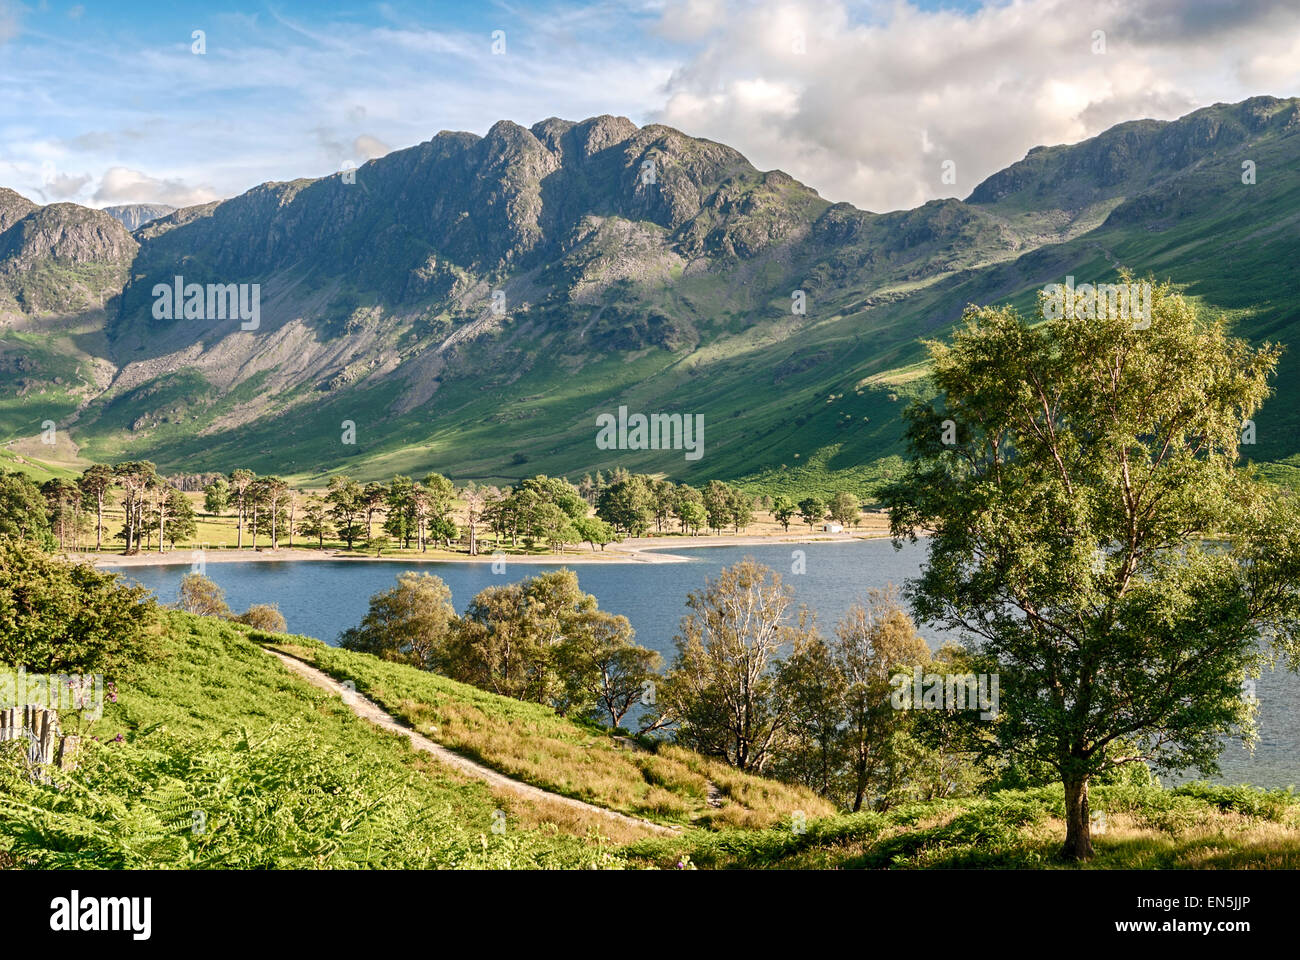 Landschaft am Buttermere, einem See im englischen Lake District im Nordwesten Englands. Stockfoto